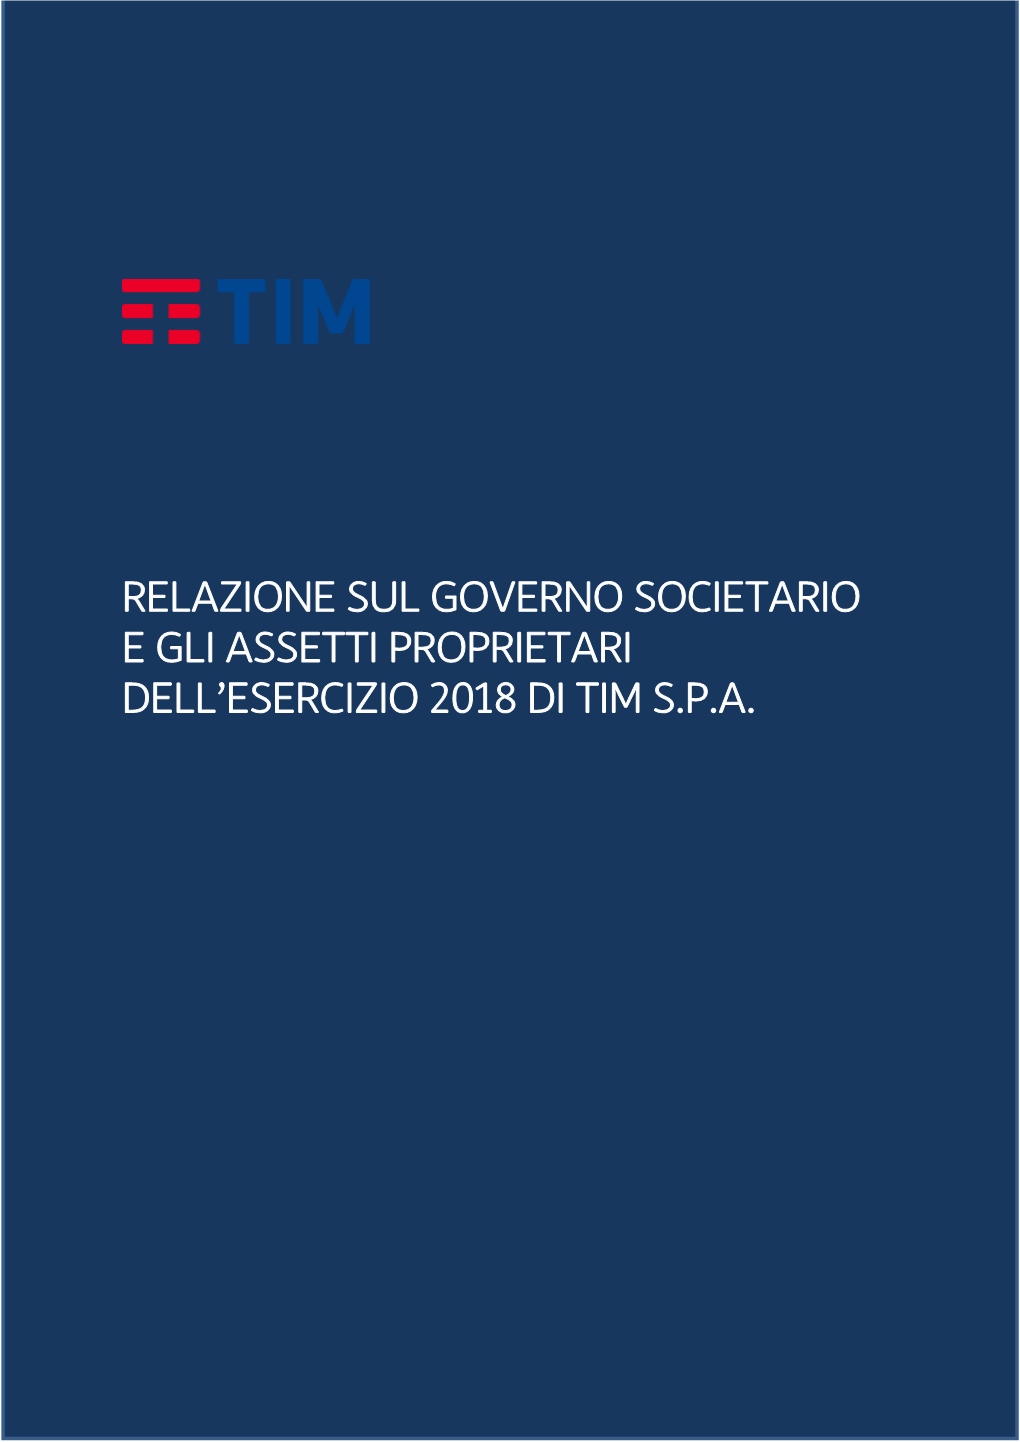 Relazione Sul Governo Societario E Gli Assetti Proprietari Dell’Esercizio 2018 Di Tim S.P.A